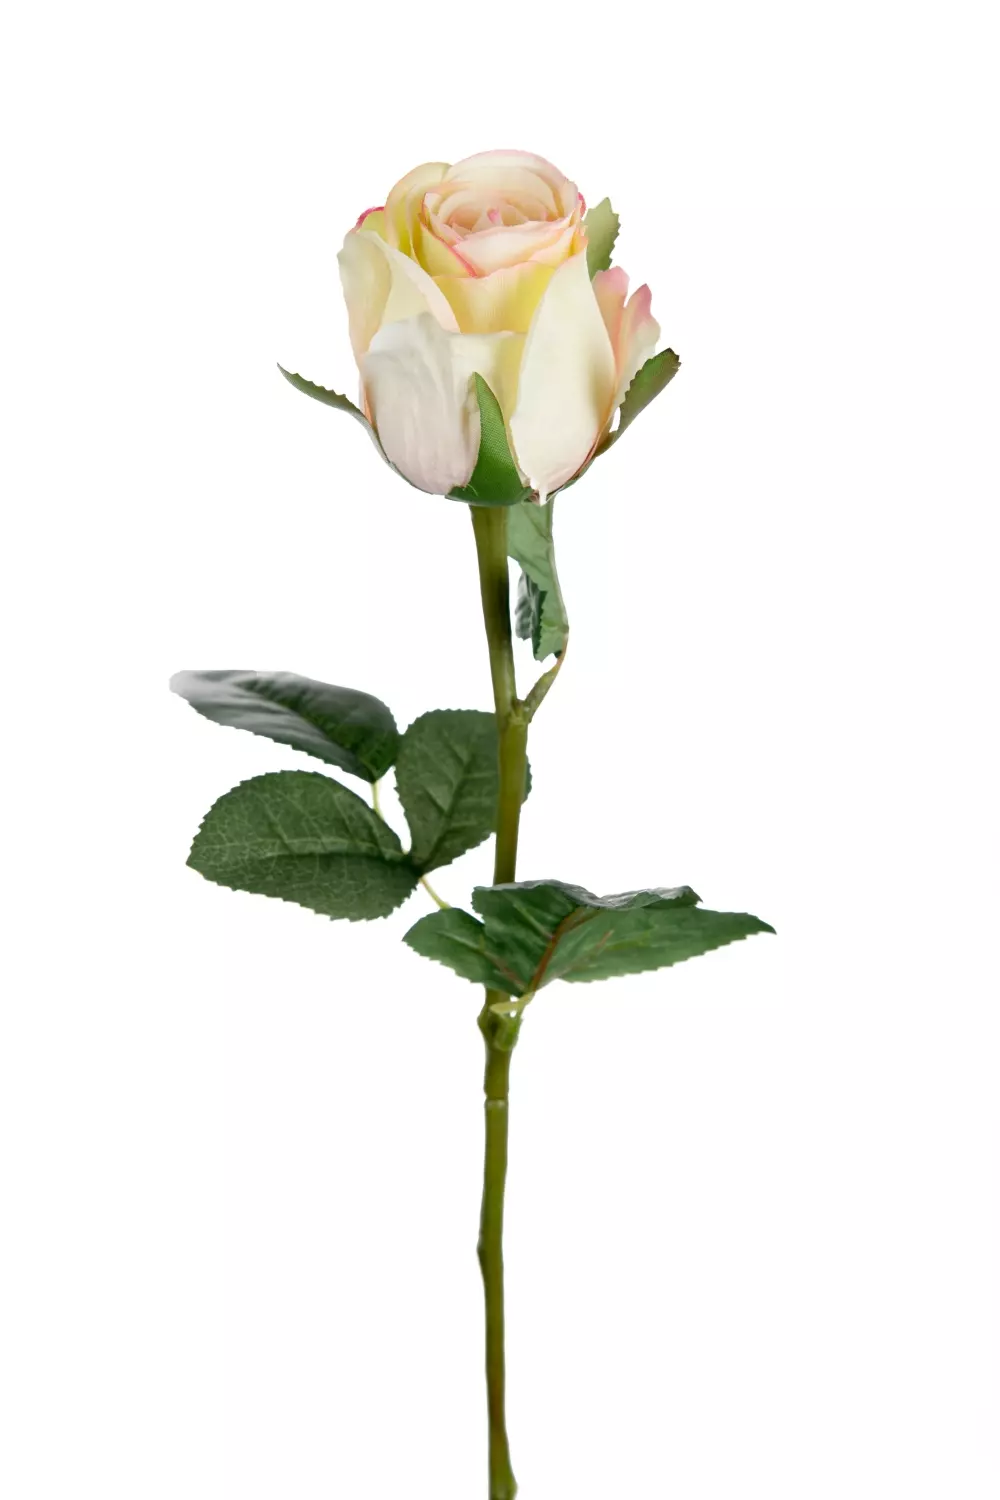 Rose Candy H50 9603-51 7330026159615 Interiør Blomster og Planter Mr Plant